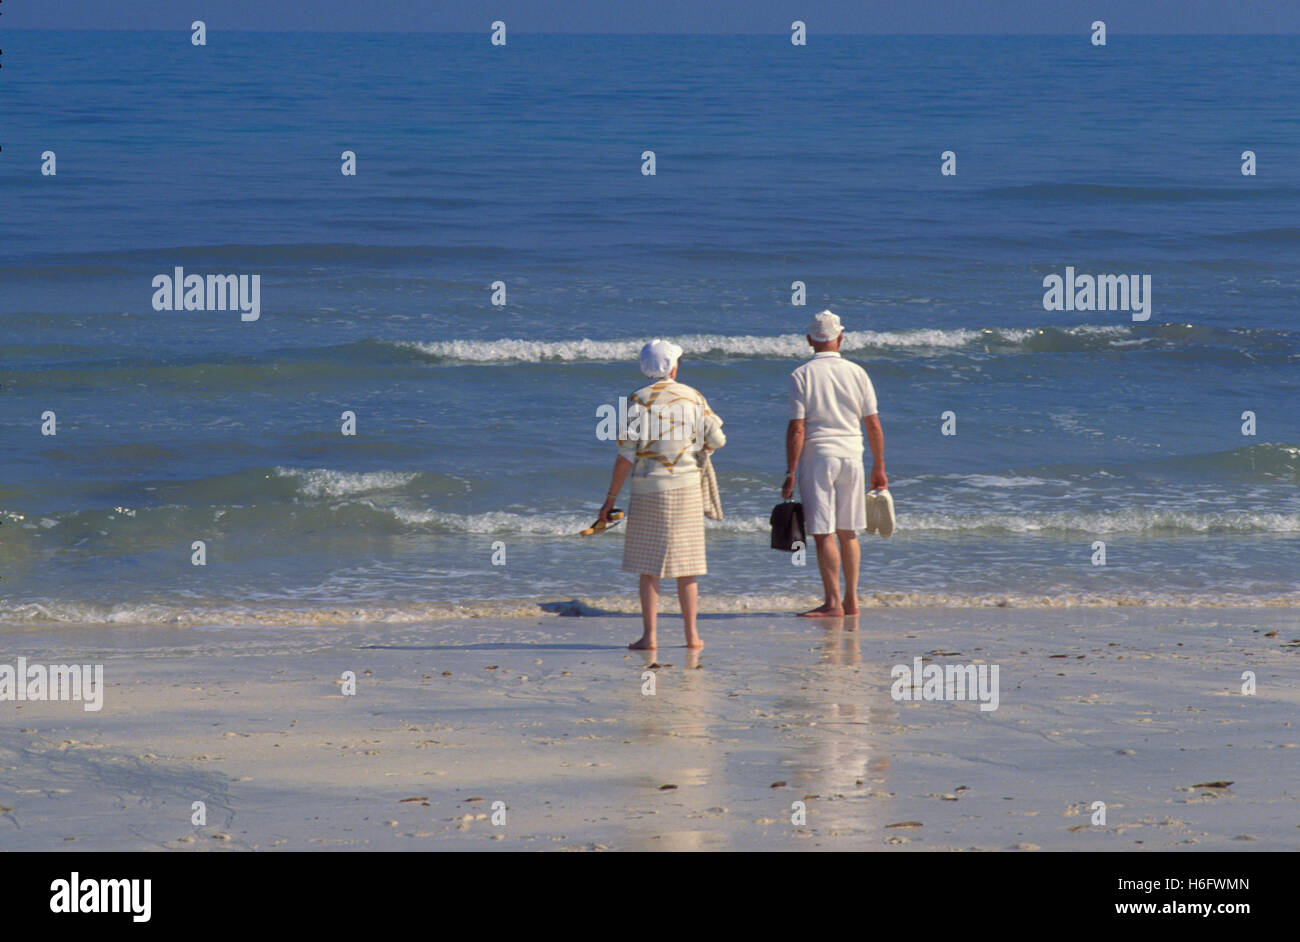 Tunisia, Jarbah Island, at the Sidi Mahrez Beach. Stock Photo